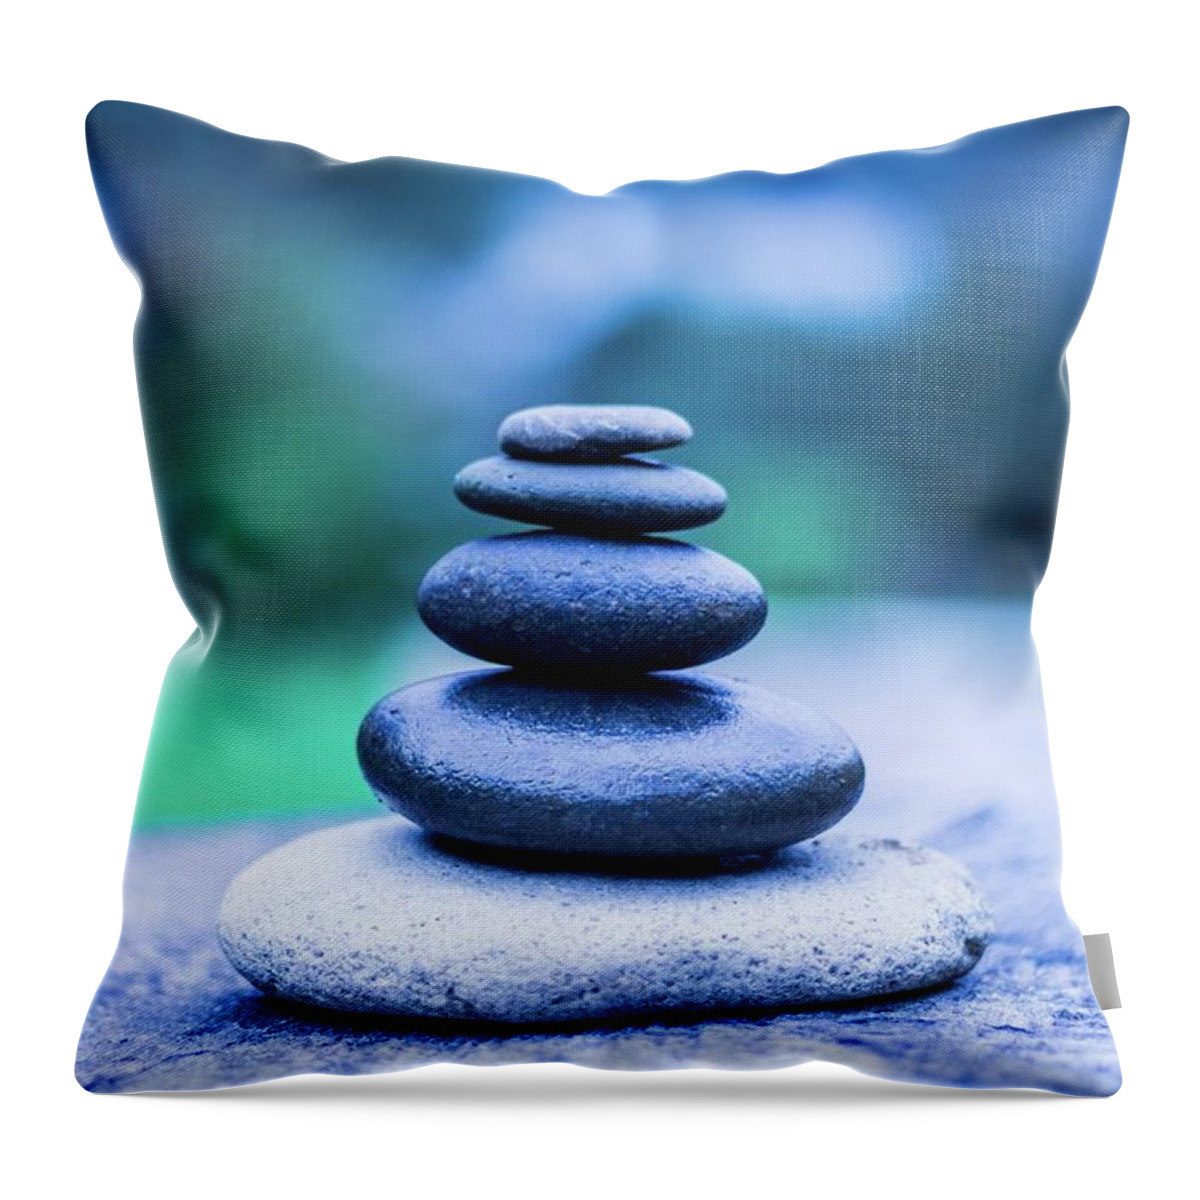 Zen Throw Pillow featuring the photograph Zen balance by Josu Ozkaritz